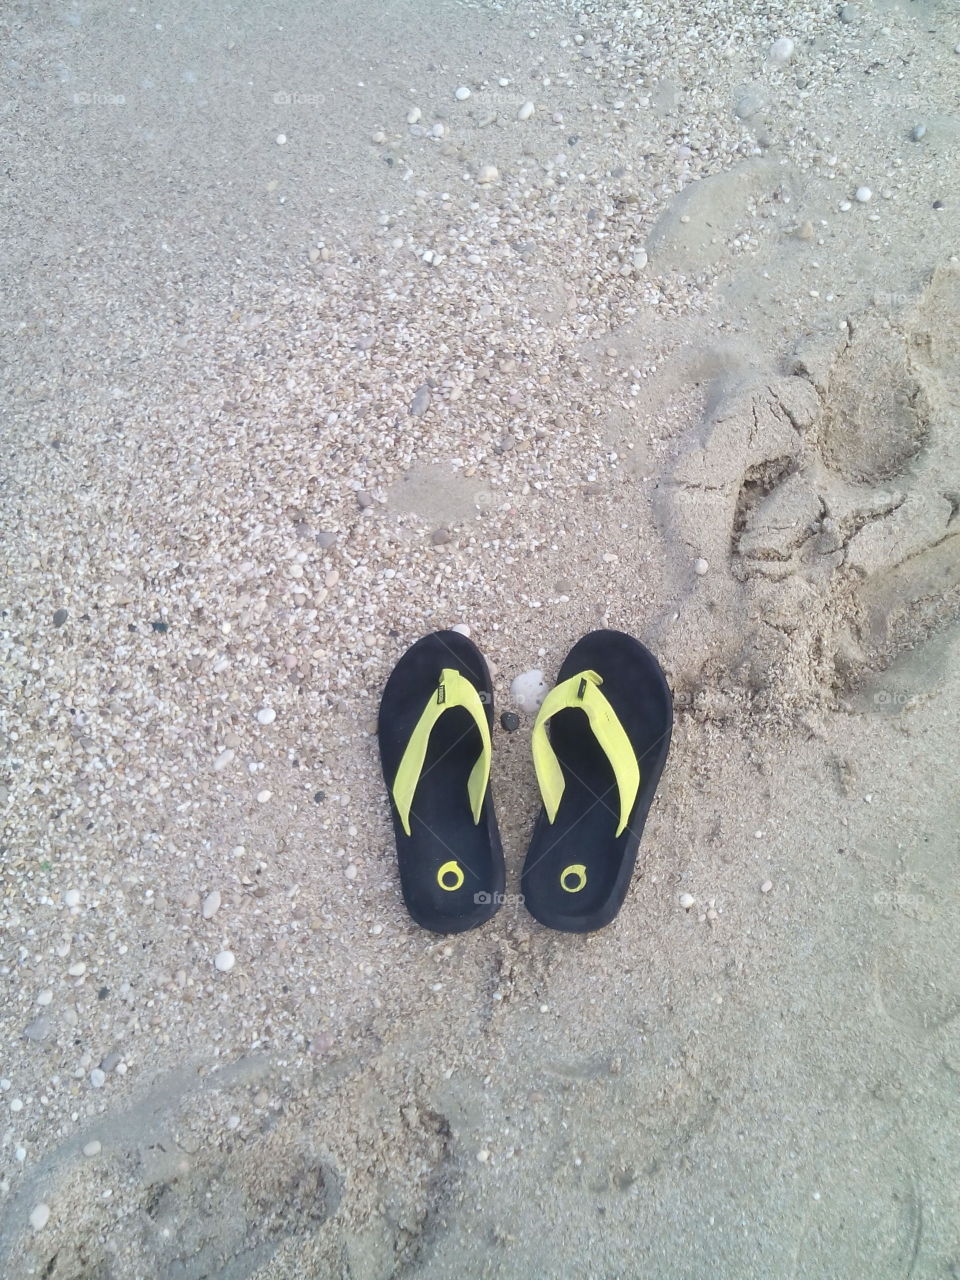 Beach, Sand, Ocean, Sea, Foot